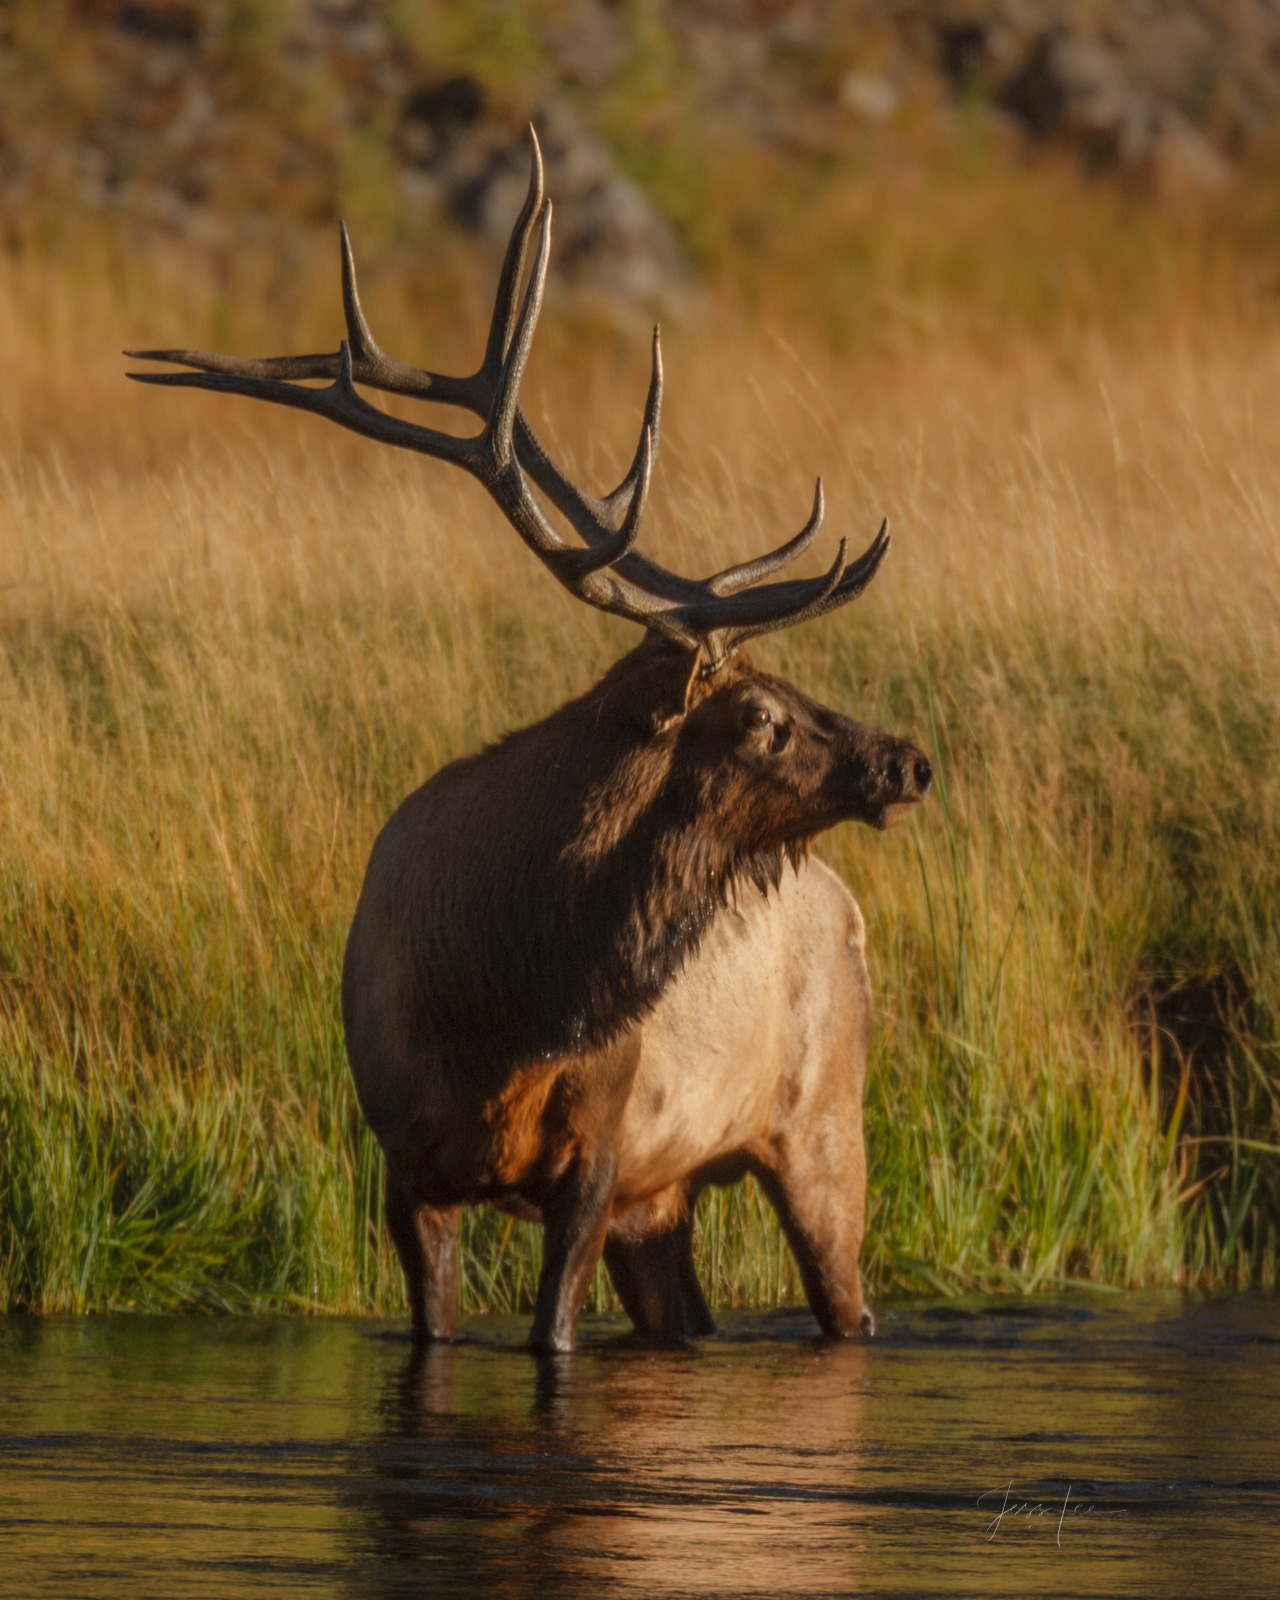 Elk drinking in river stops to listen